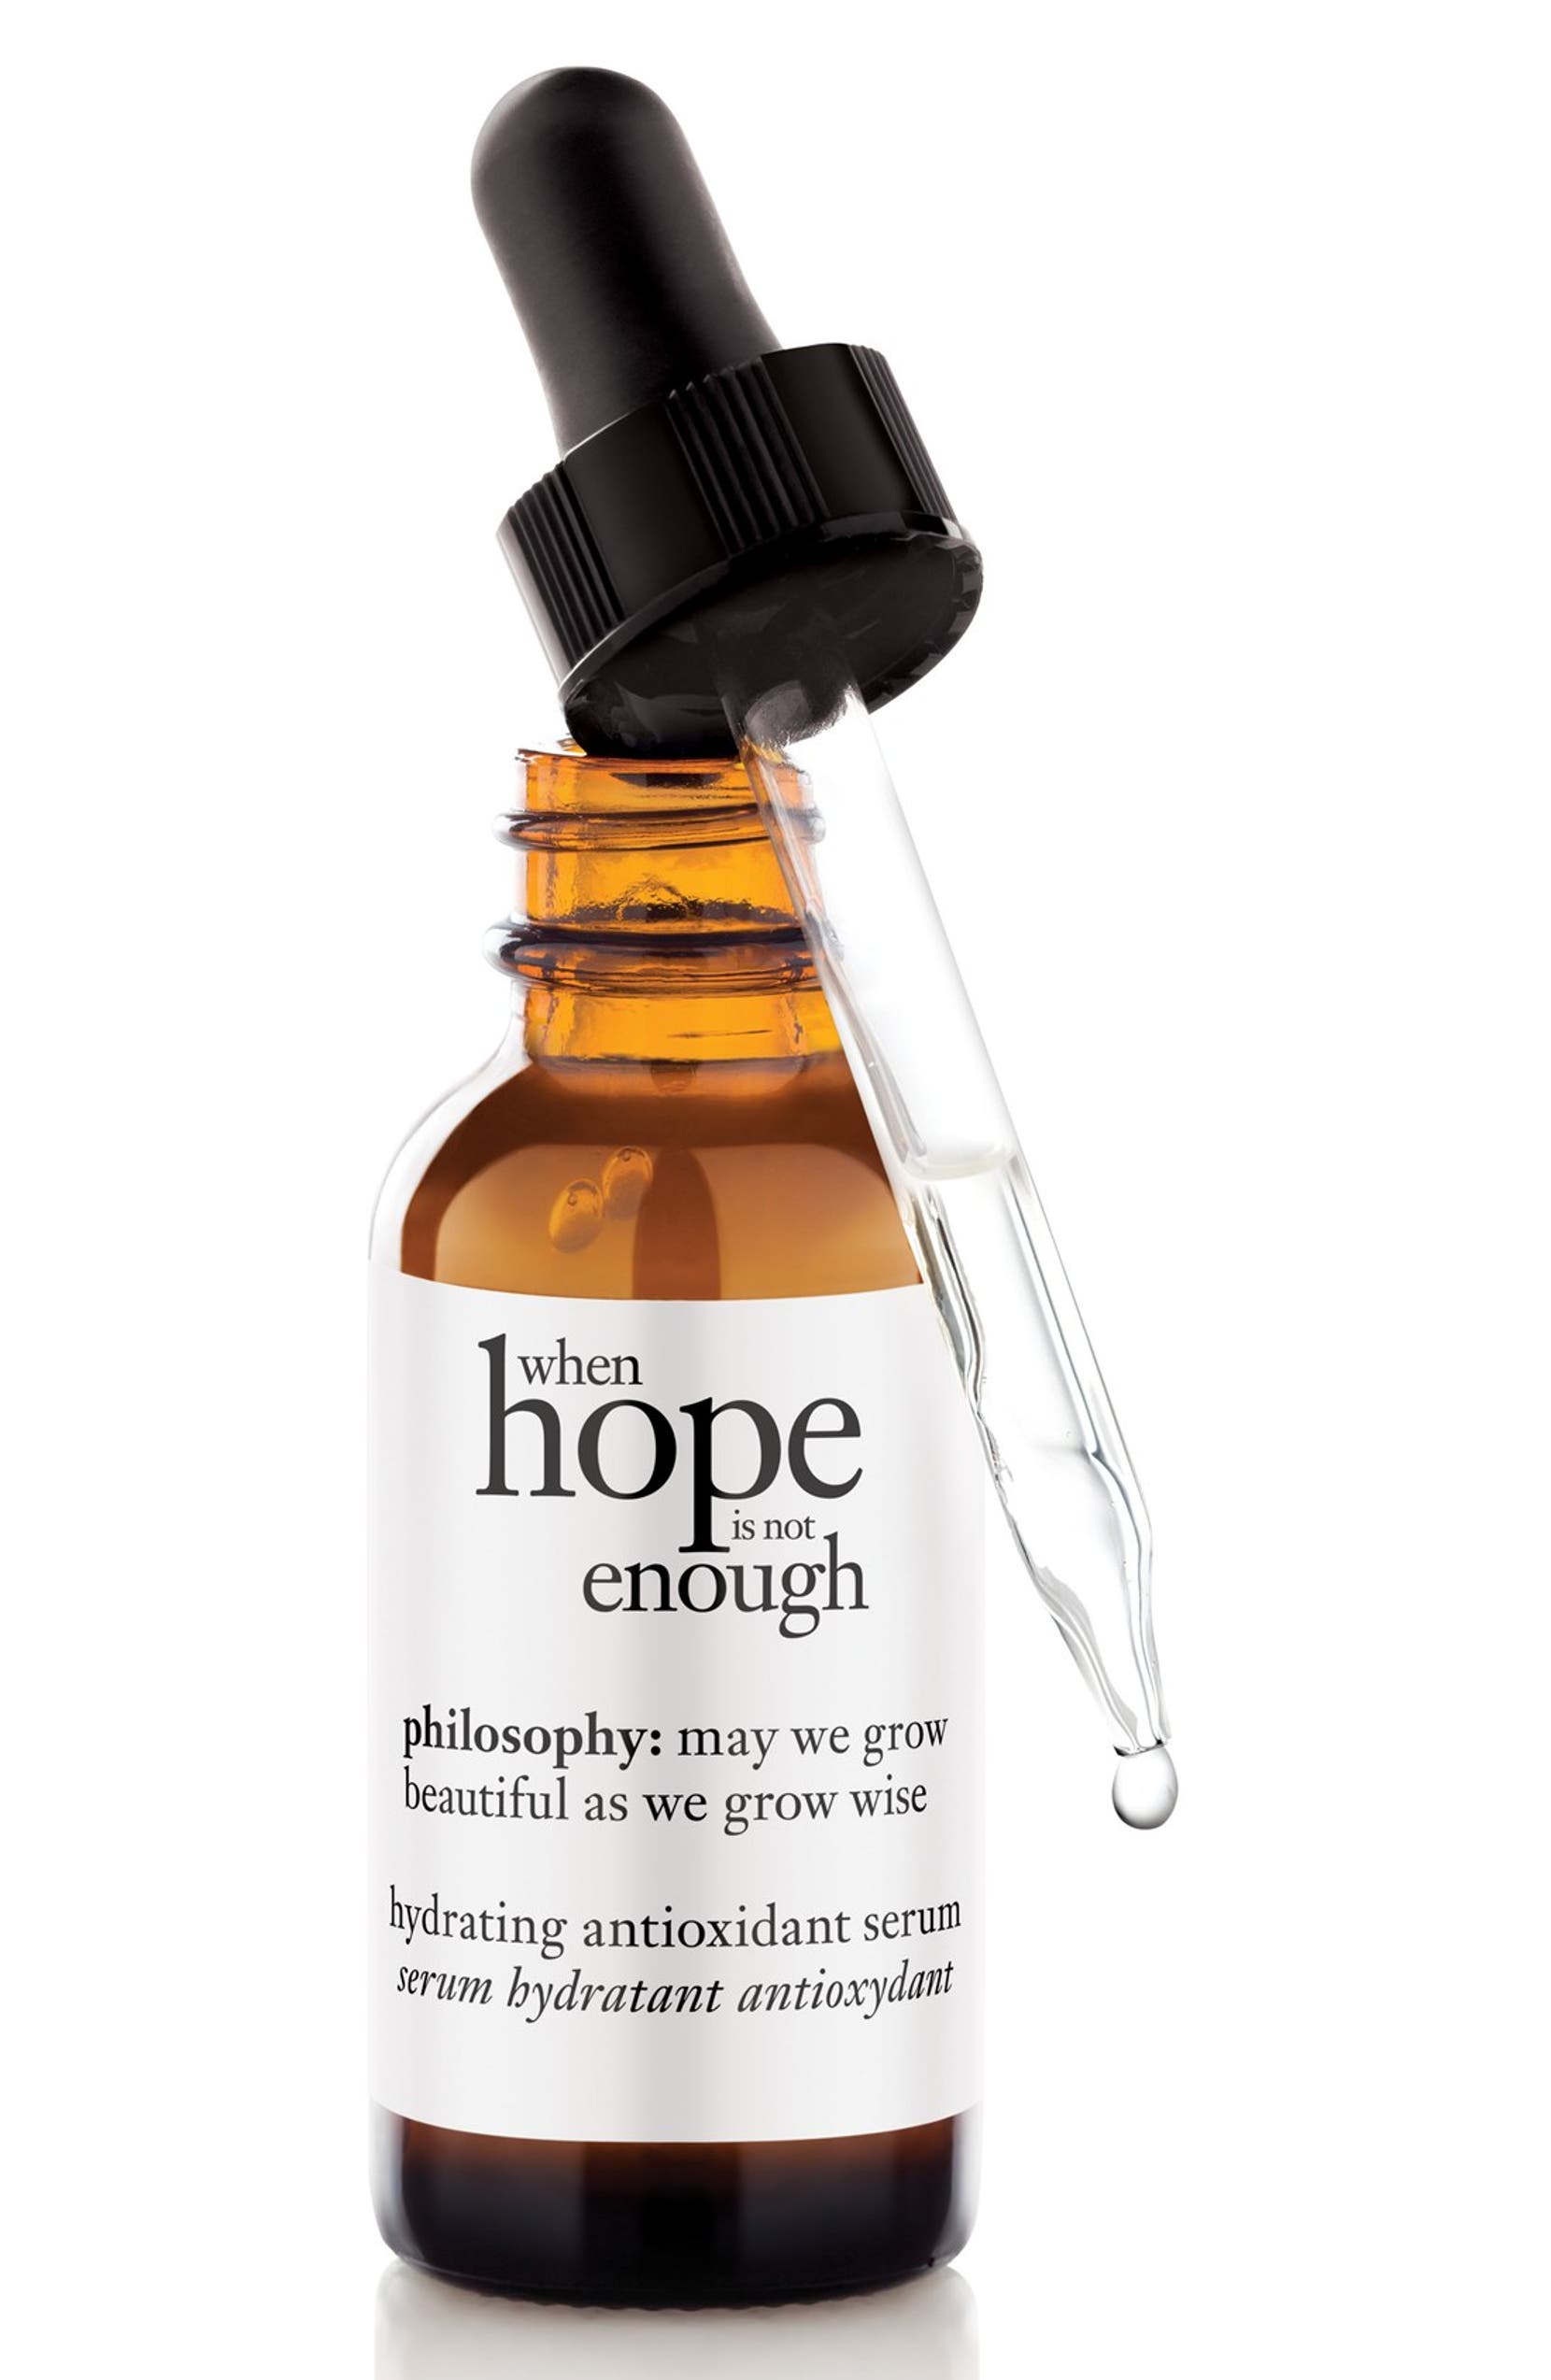 à¸à¸¥à¸à¸²à¸£à¸à¹à¸à¸«à¸²à¸£à¸¹à¸à¸�à¸²à¸à¸ªà¸³à¸«à¸£à¸±à¸ Philosophy When Hope is not Enough Hydrating Antioxidant Serum